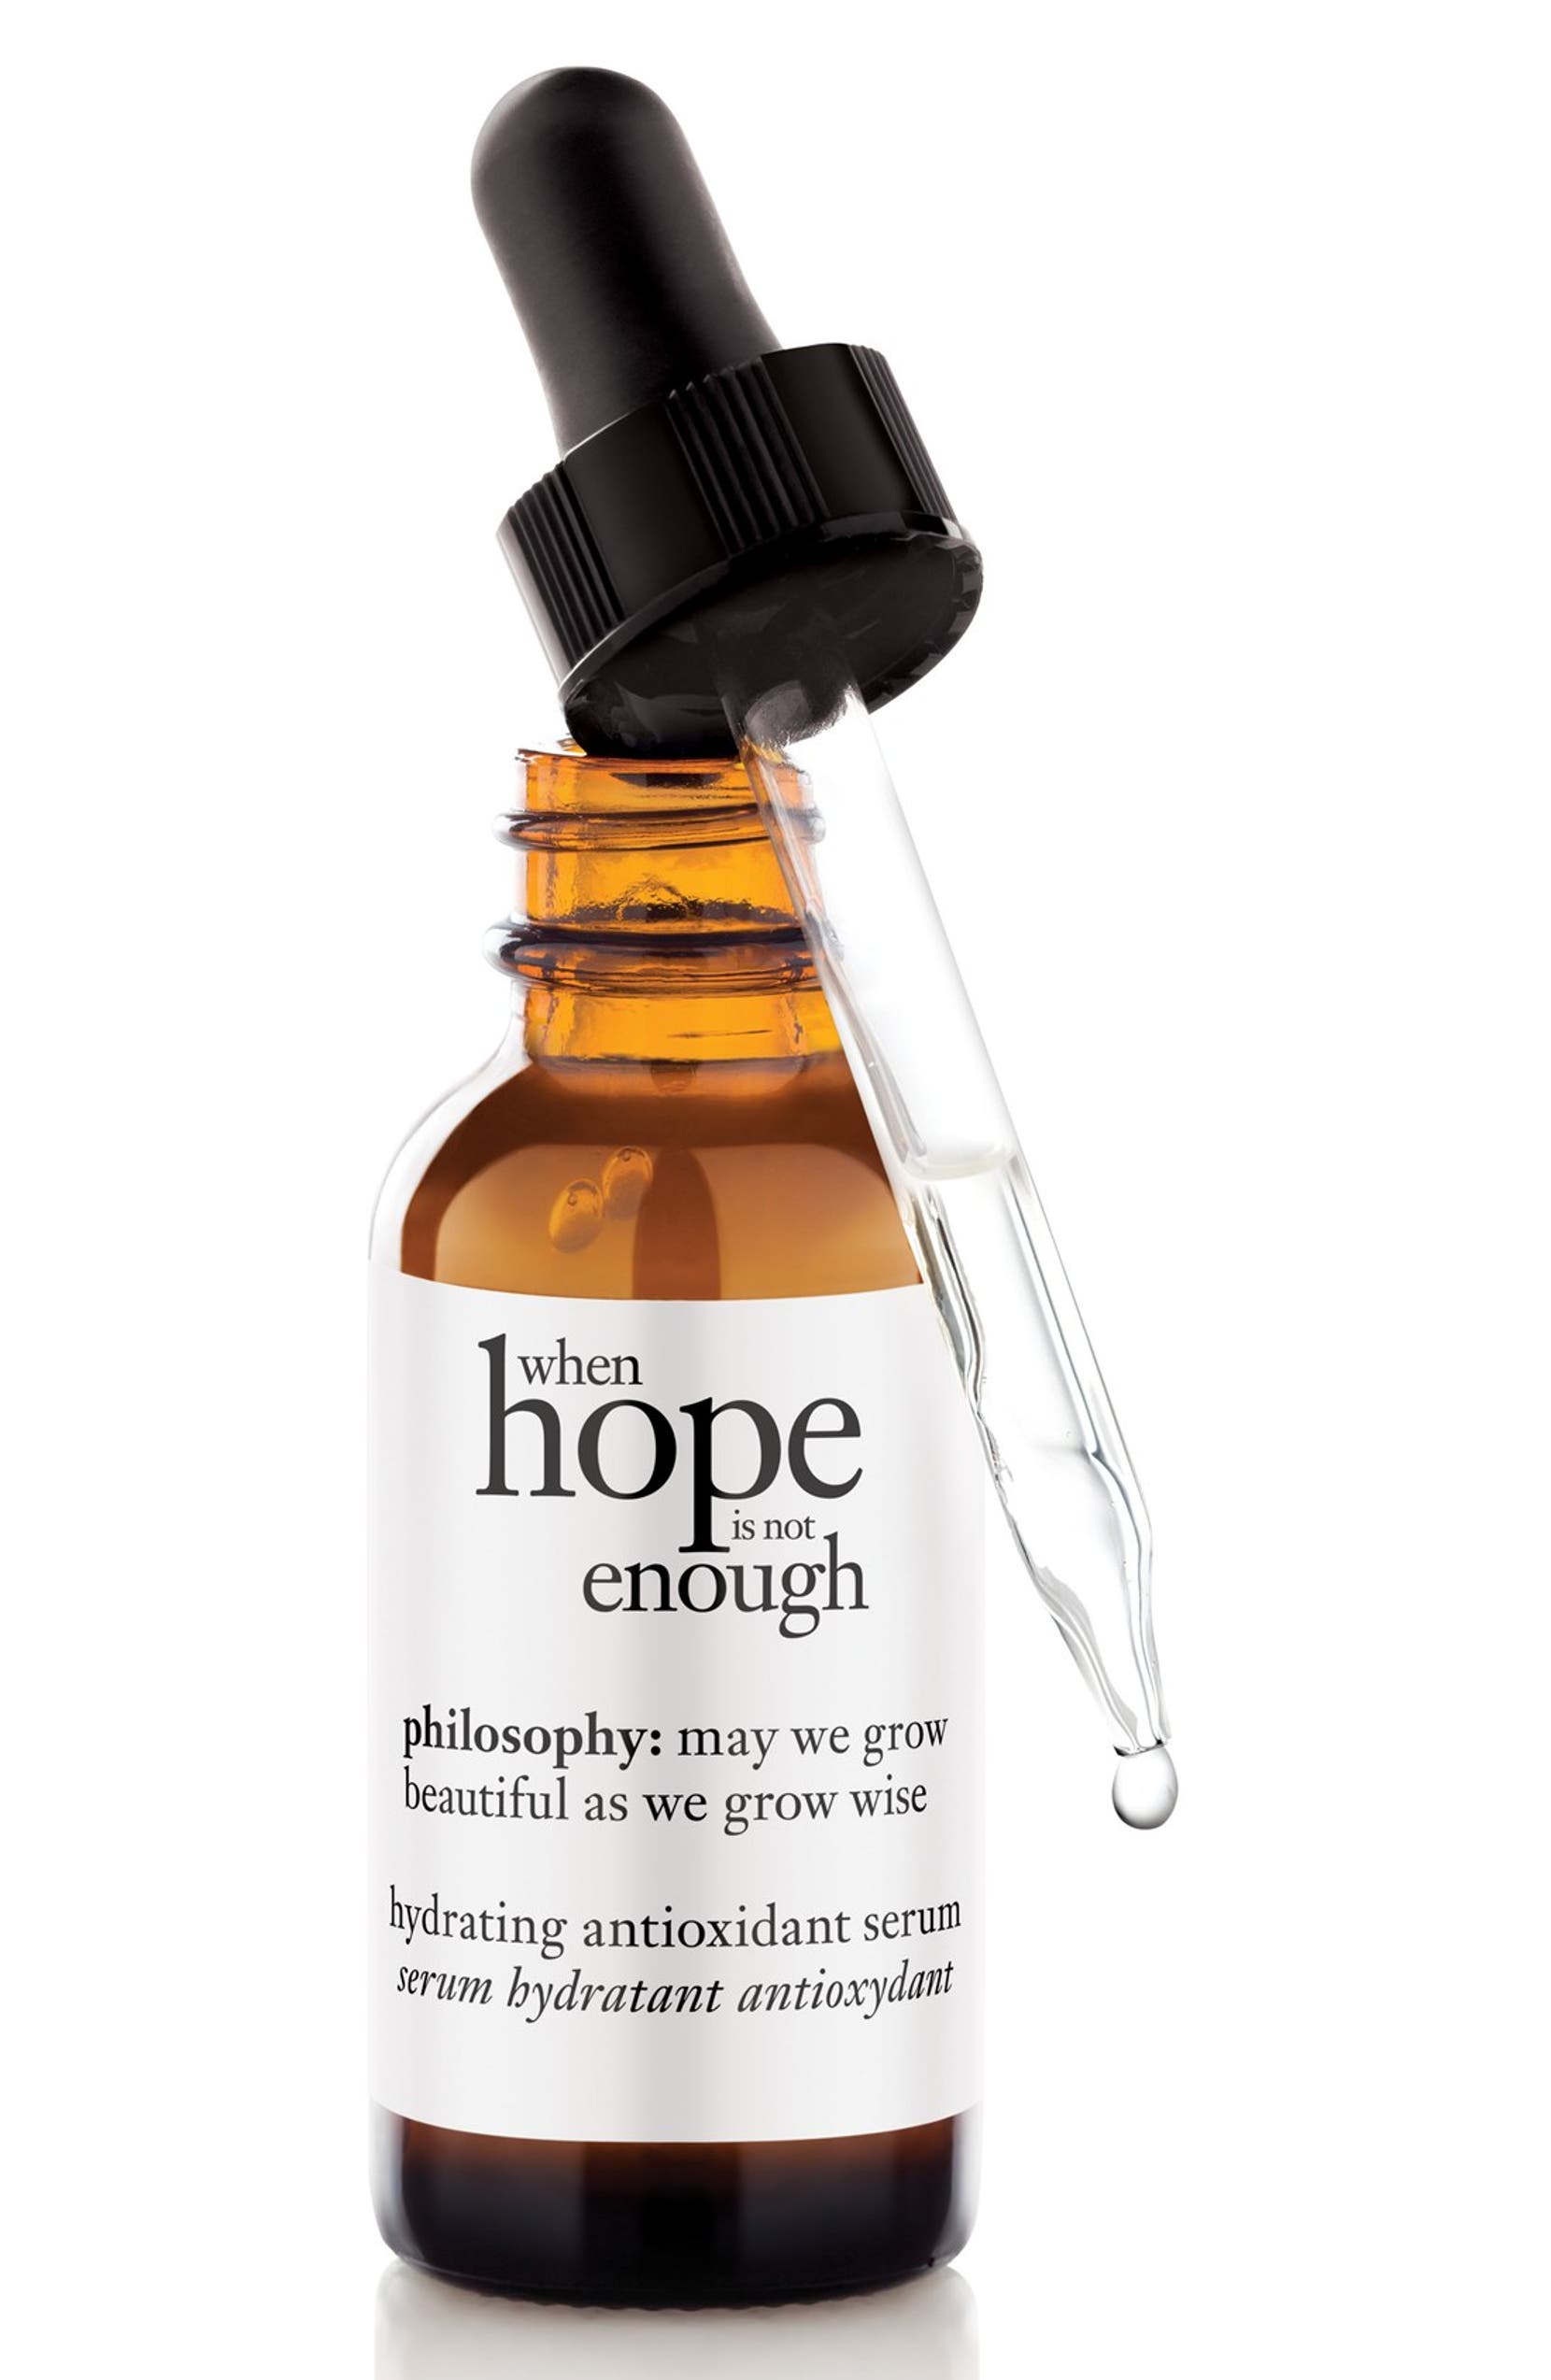 à¸à¸¥à¸à¸²à¸£à¸à¹à¸à¸«à¸²à¸£à¸¹à¸à¸�à¸²à¸à¸ªà¸³à¸«à¸£à¸±à¸ Philosophy When Hope is not Enough Hydrating Antioxidant Serum